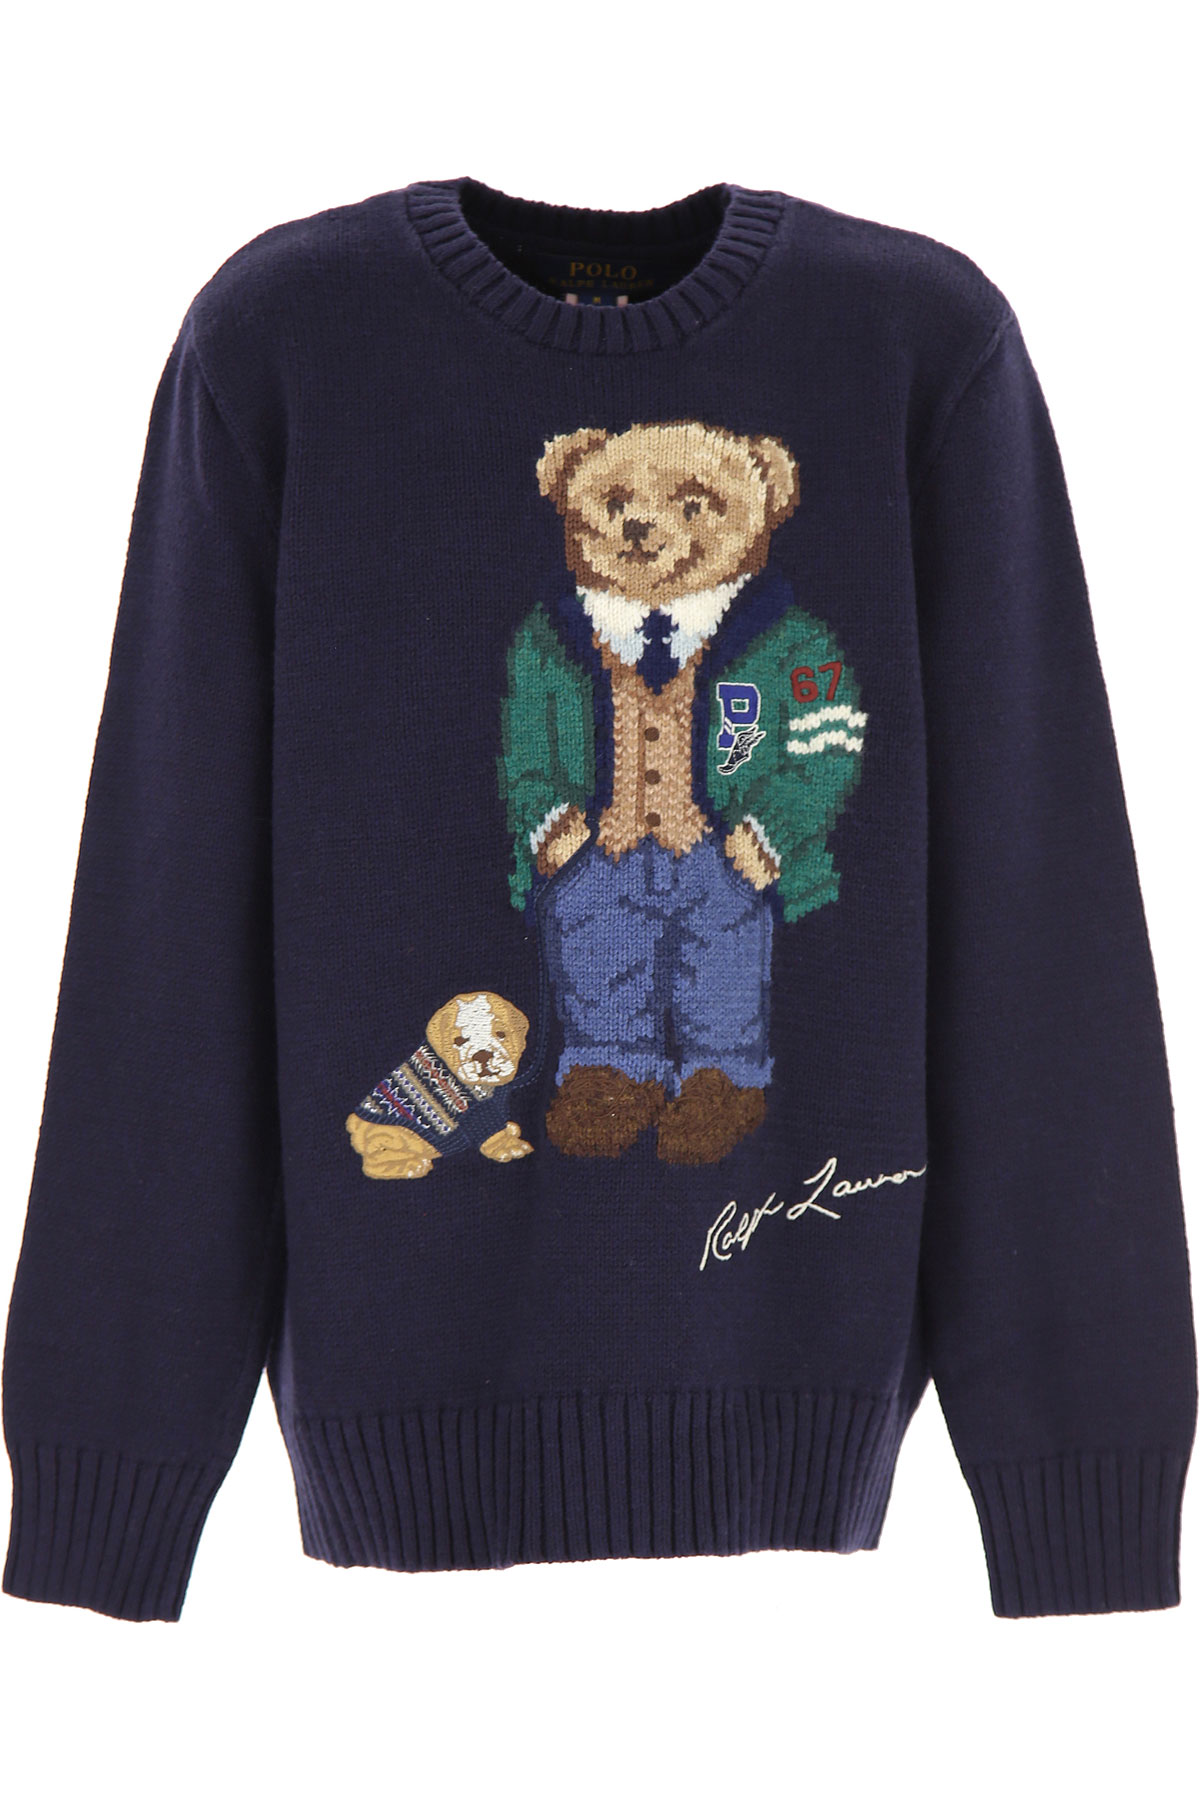 Ralph Lauren Kinder Pullover für Jungen Günstig im Sale, Blau, Baumwolle, 2017, L M S XL